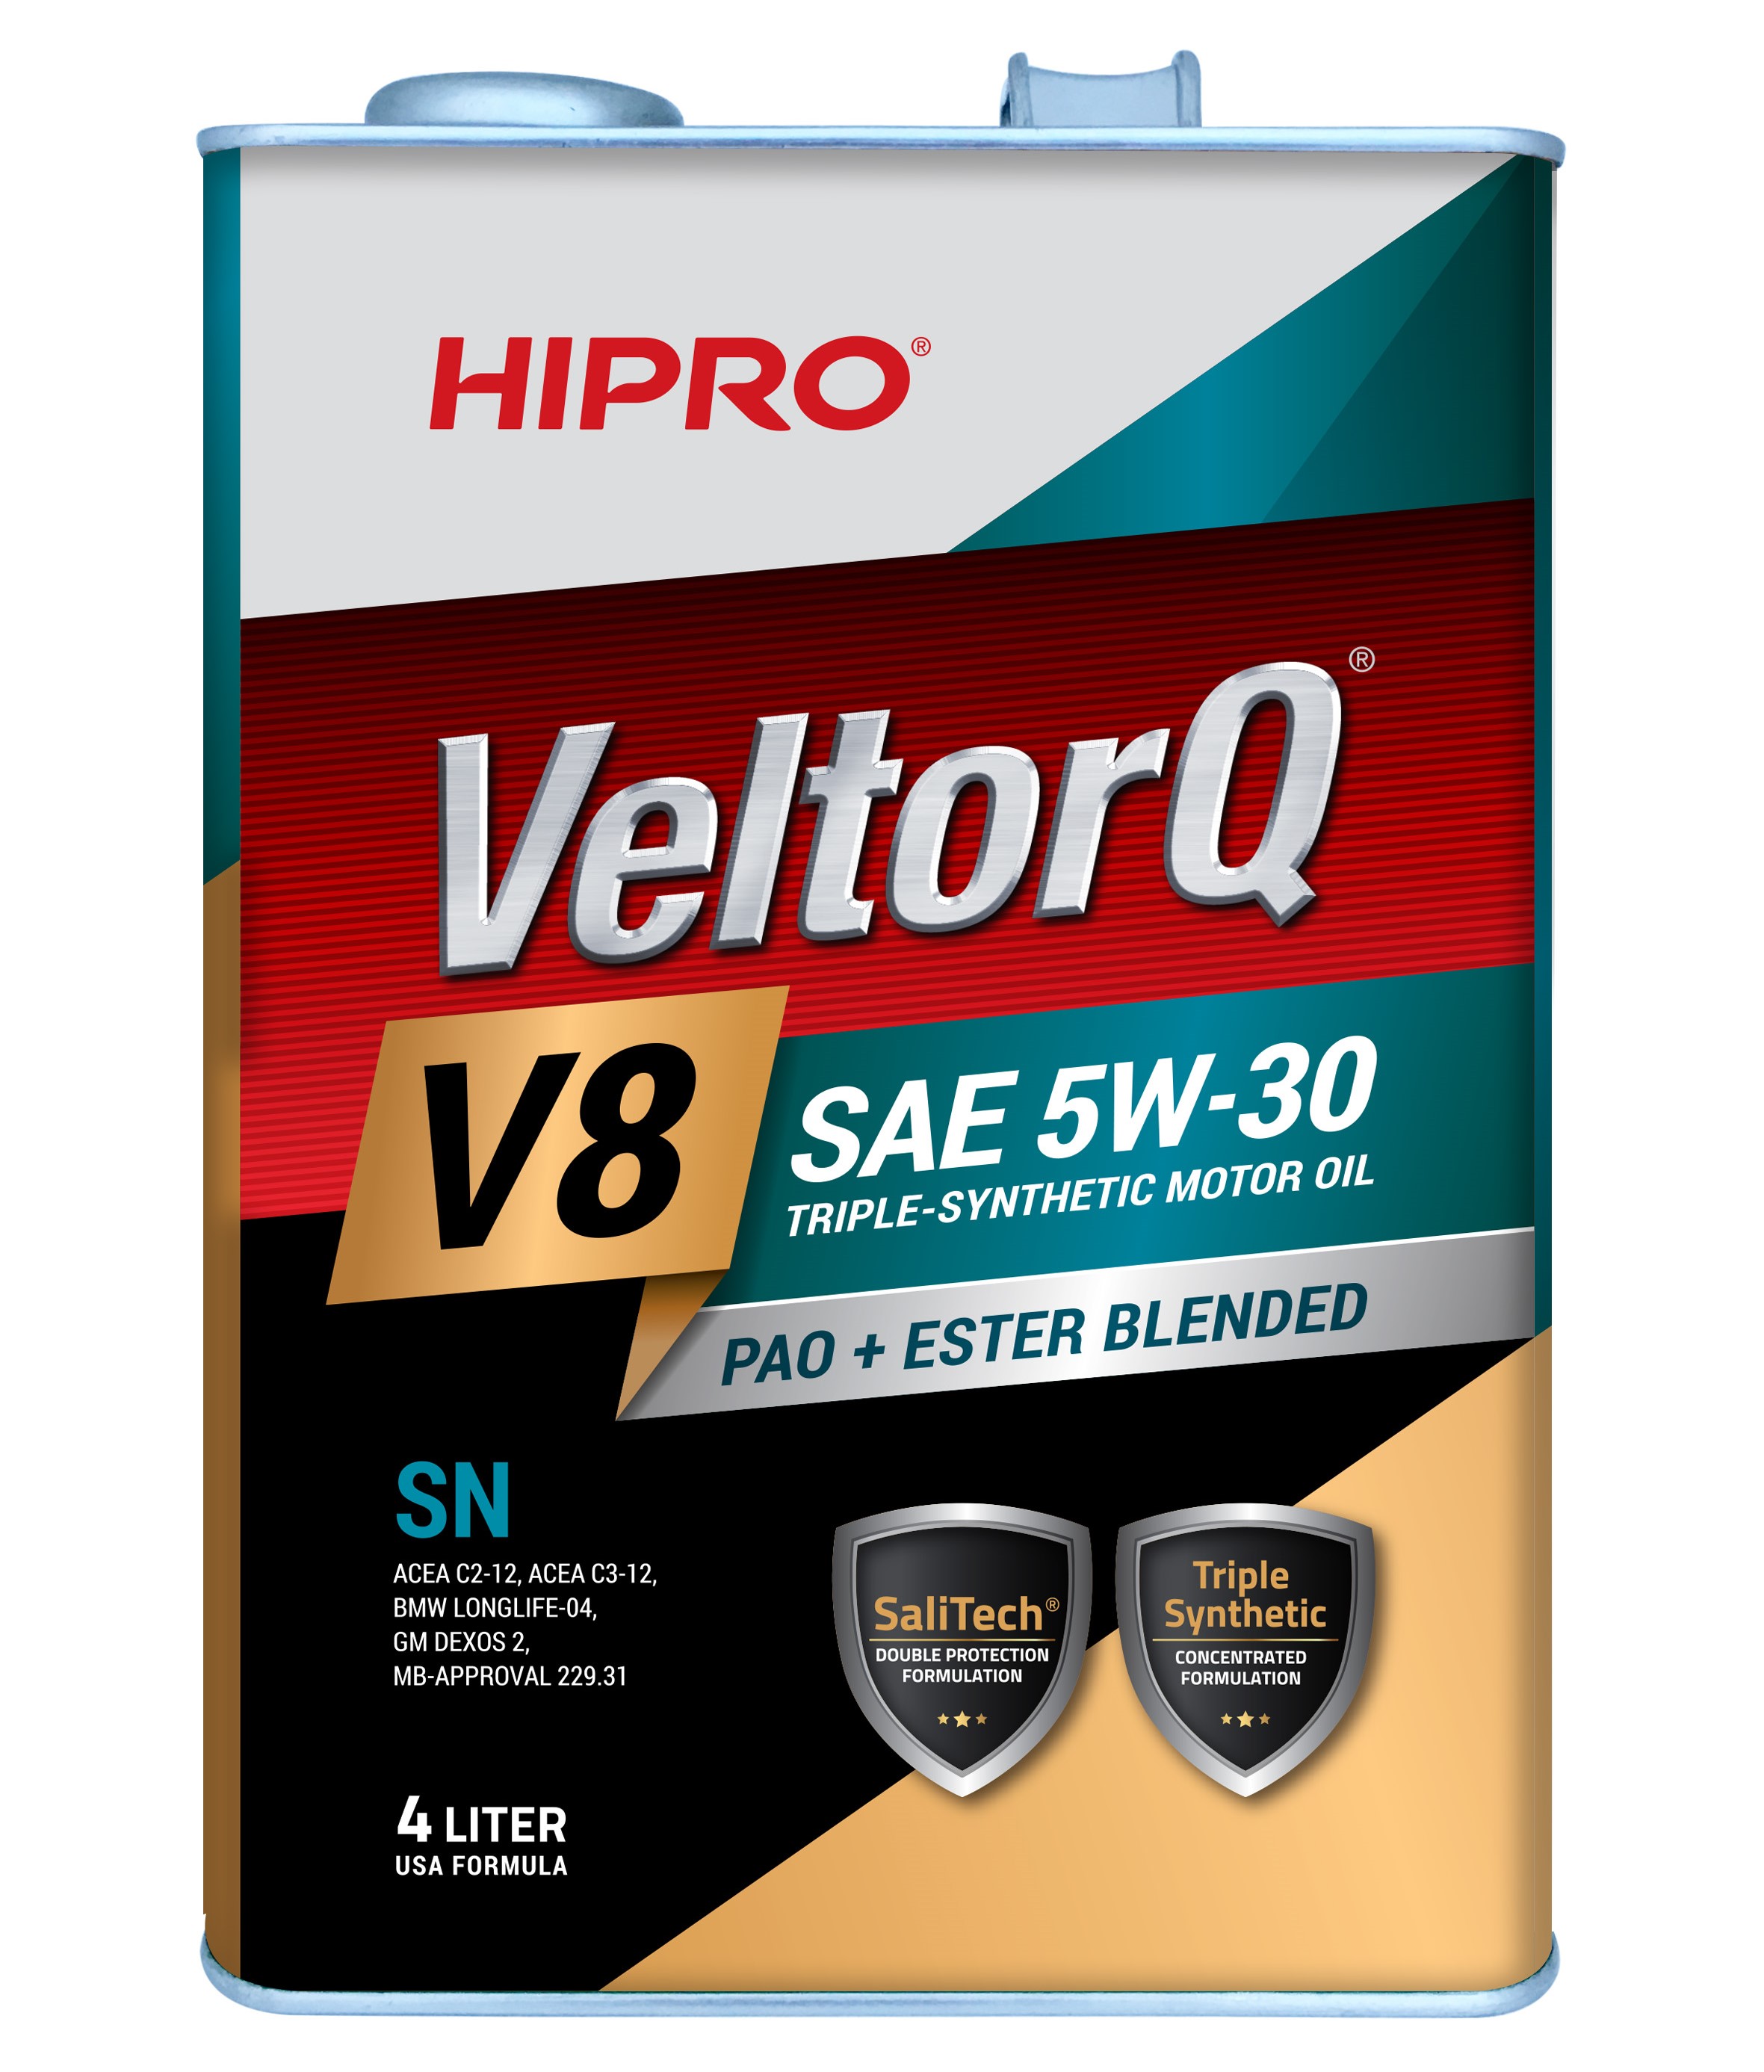 HIPRO VeltorQ Gold Series V8 SAE 5W-30 API SN/CF